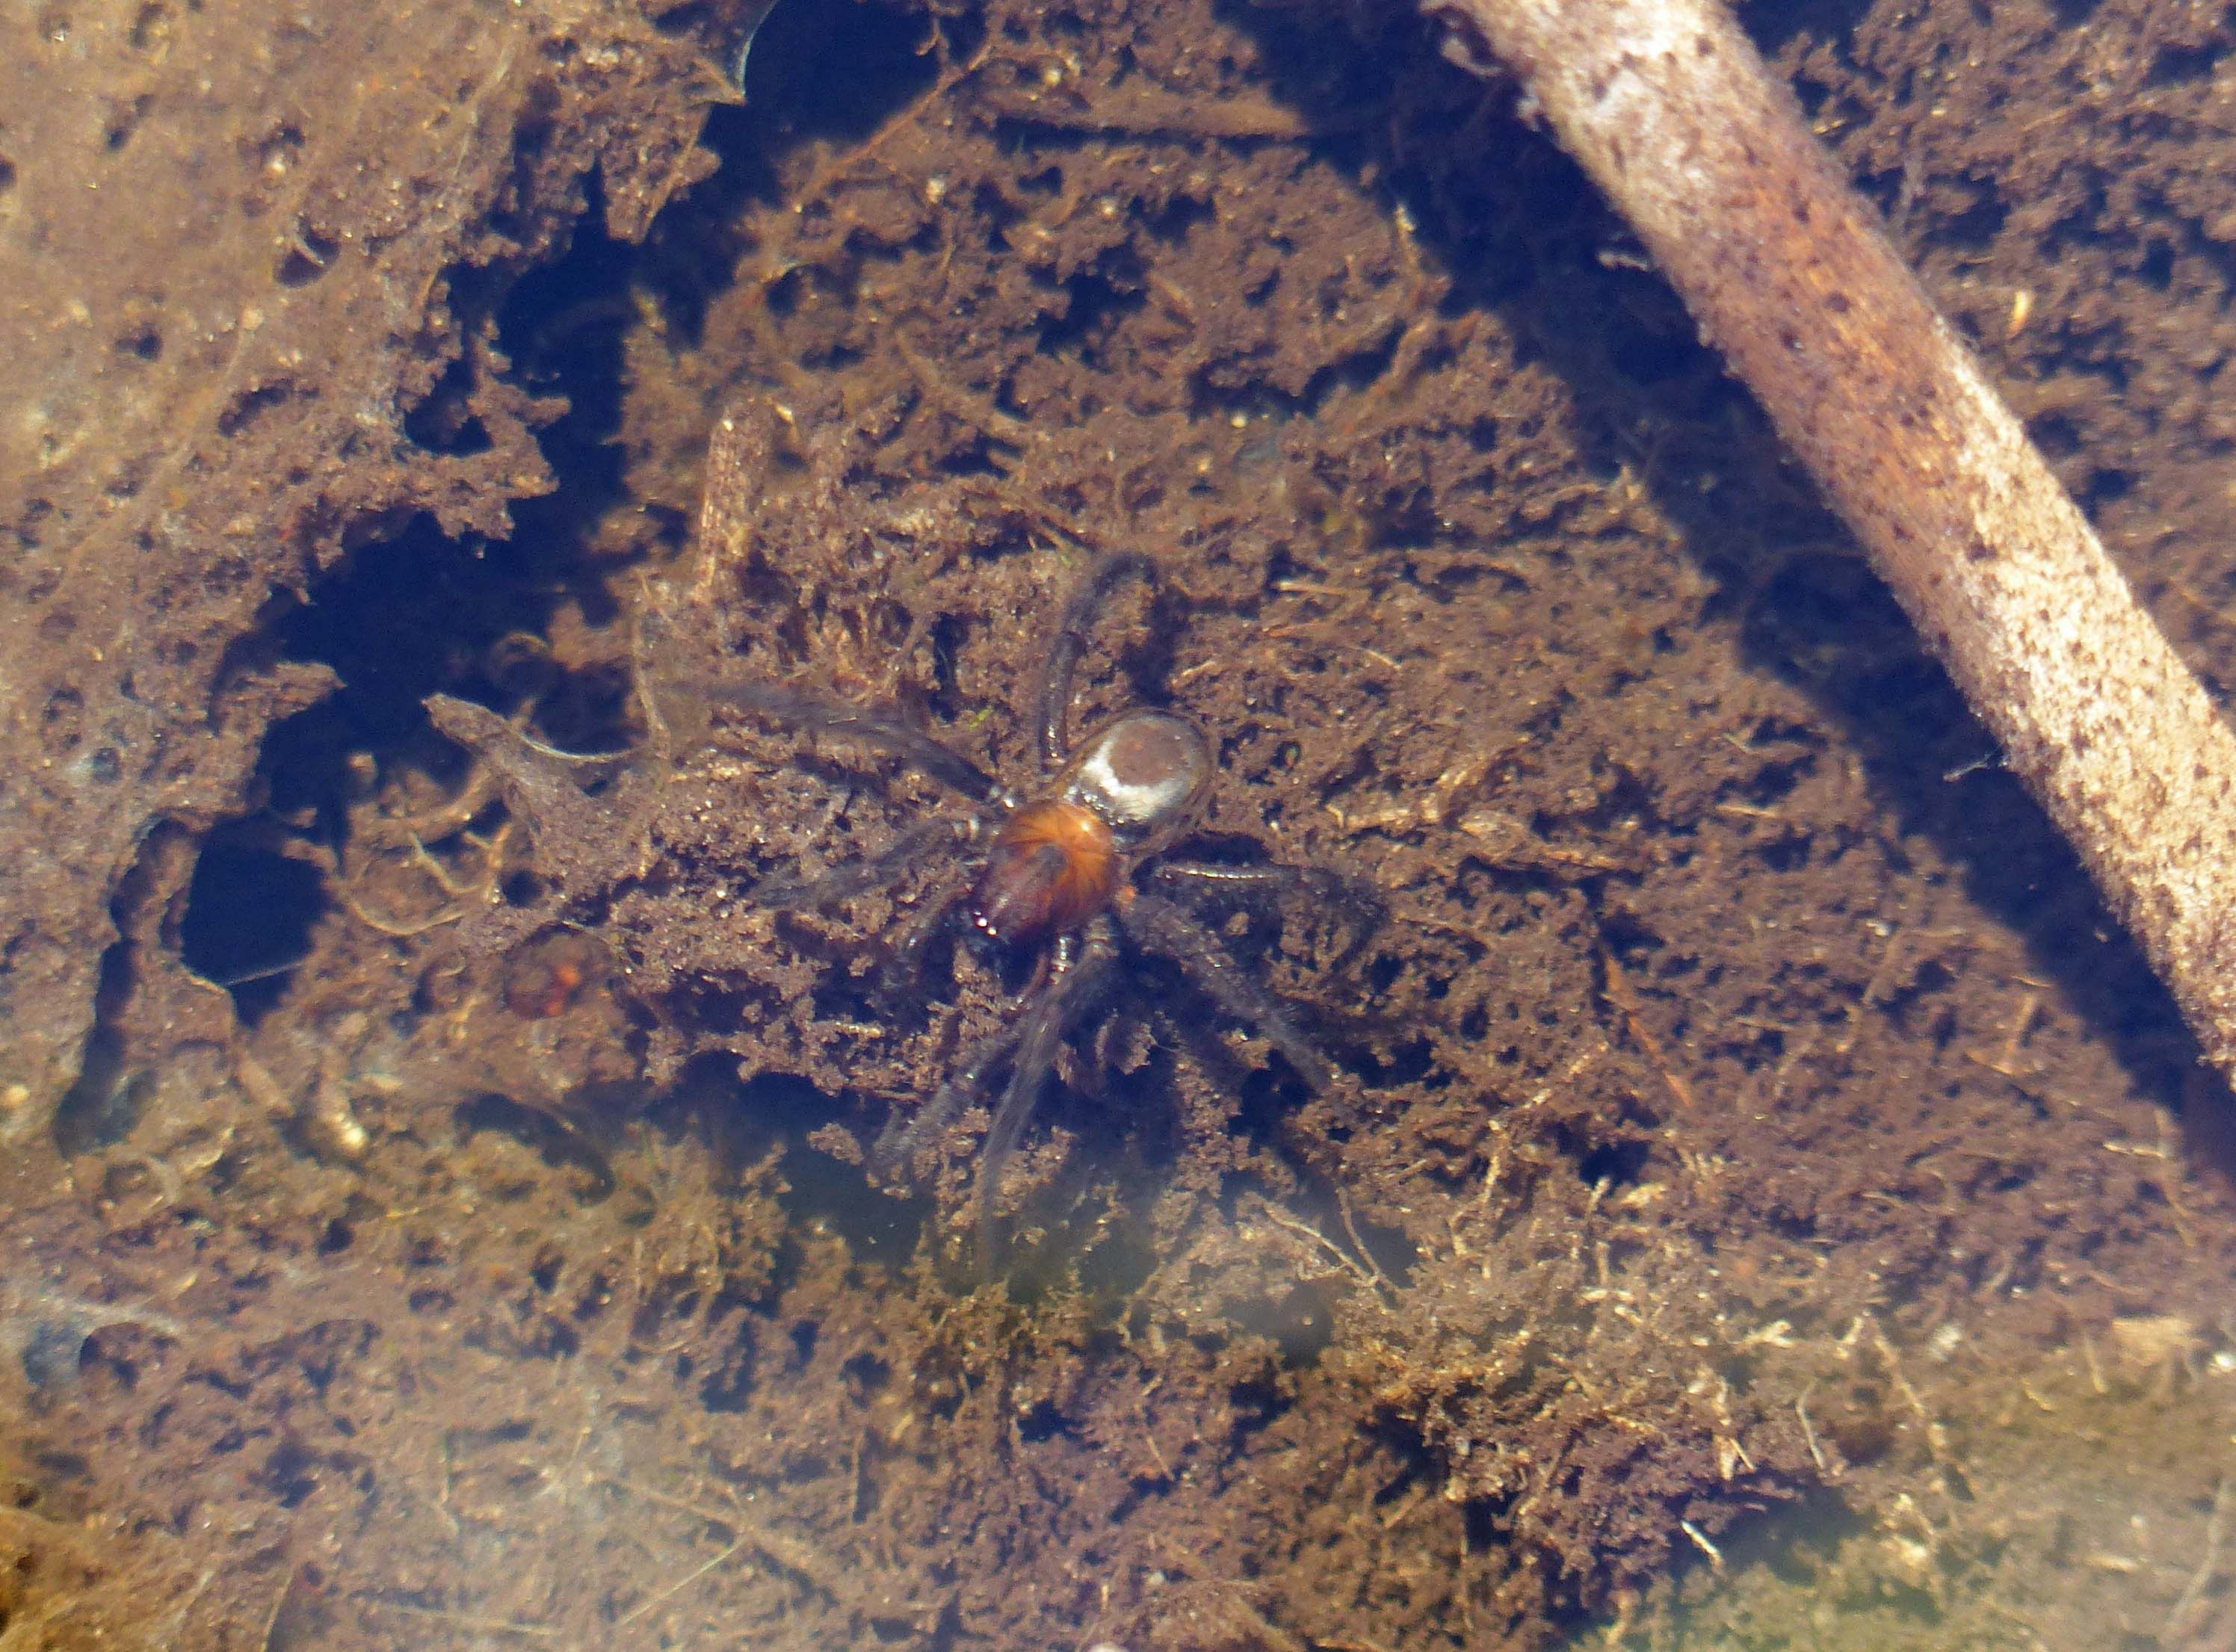 Argyroneta aquatica below water in a fen turf pond